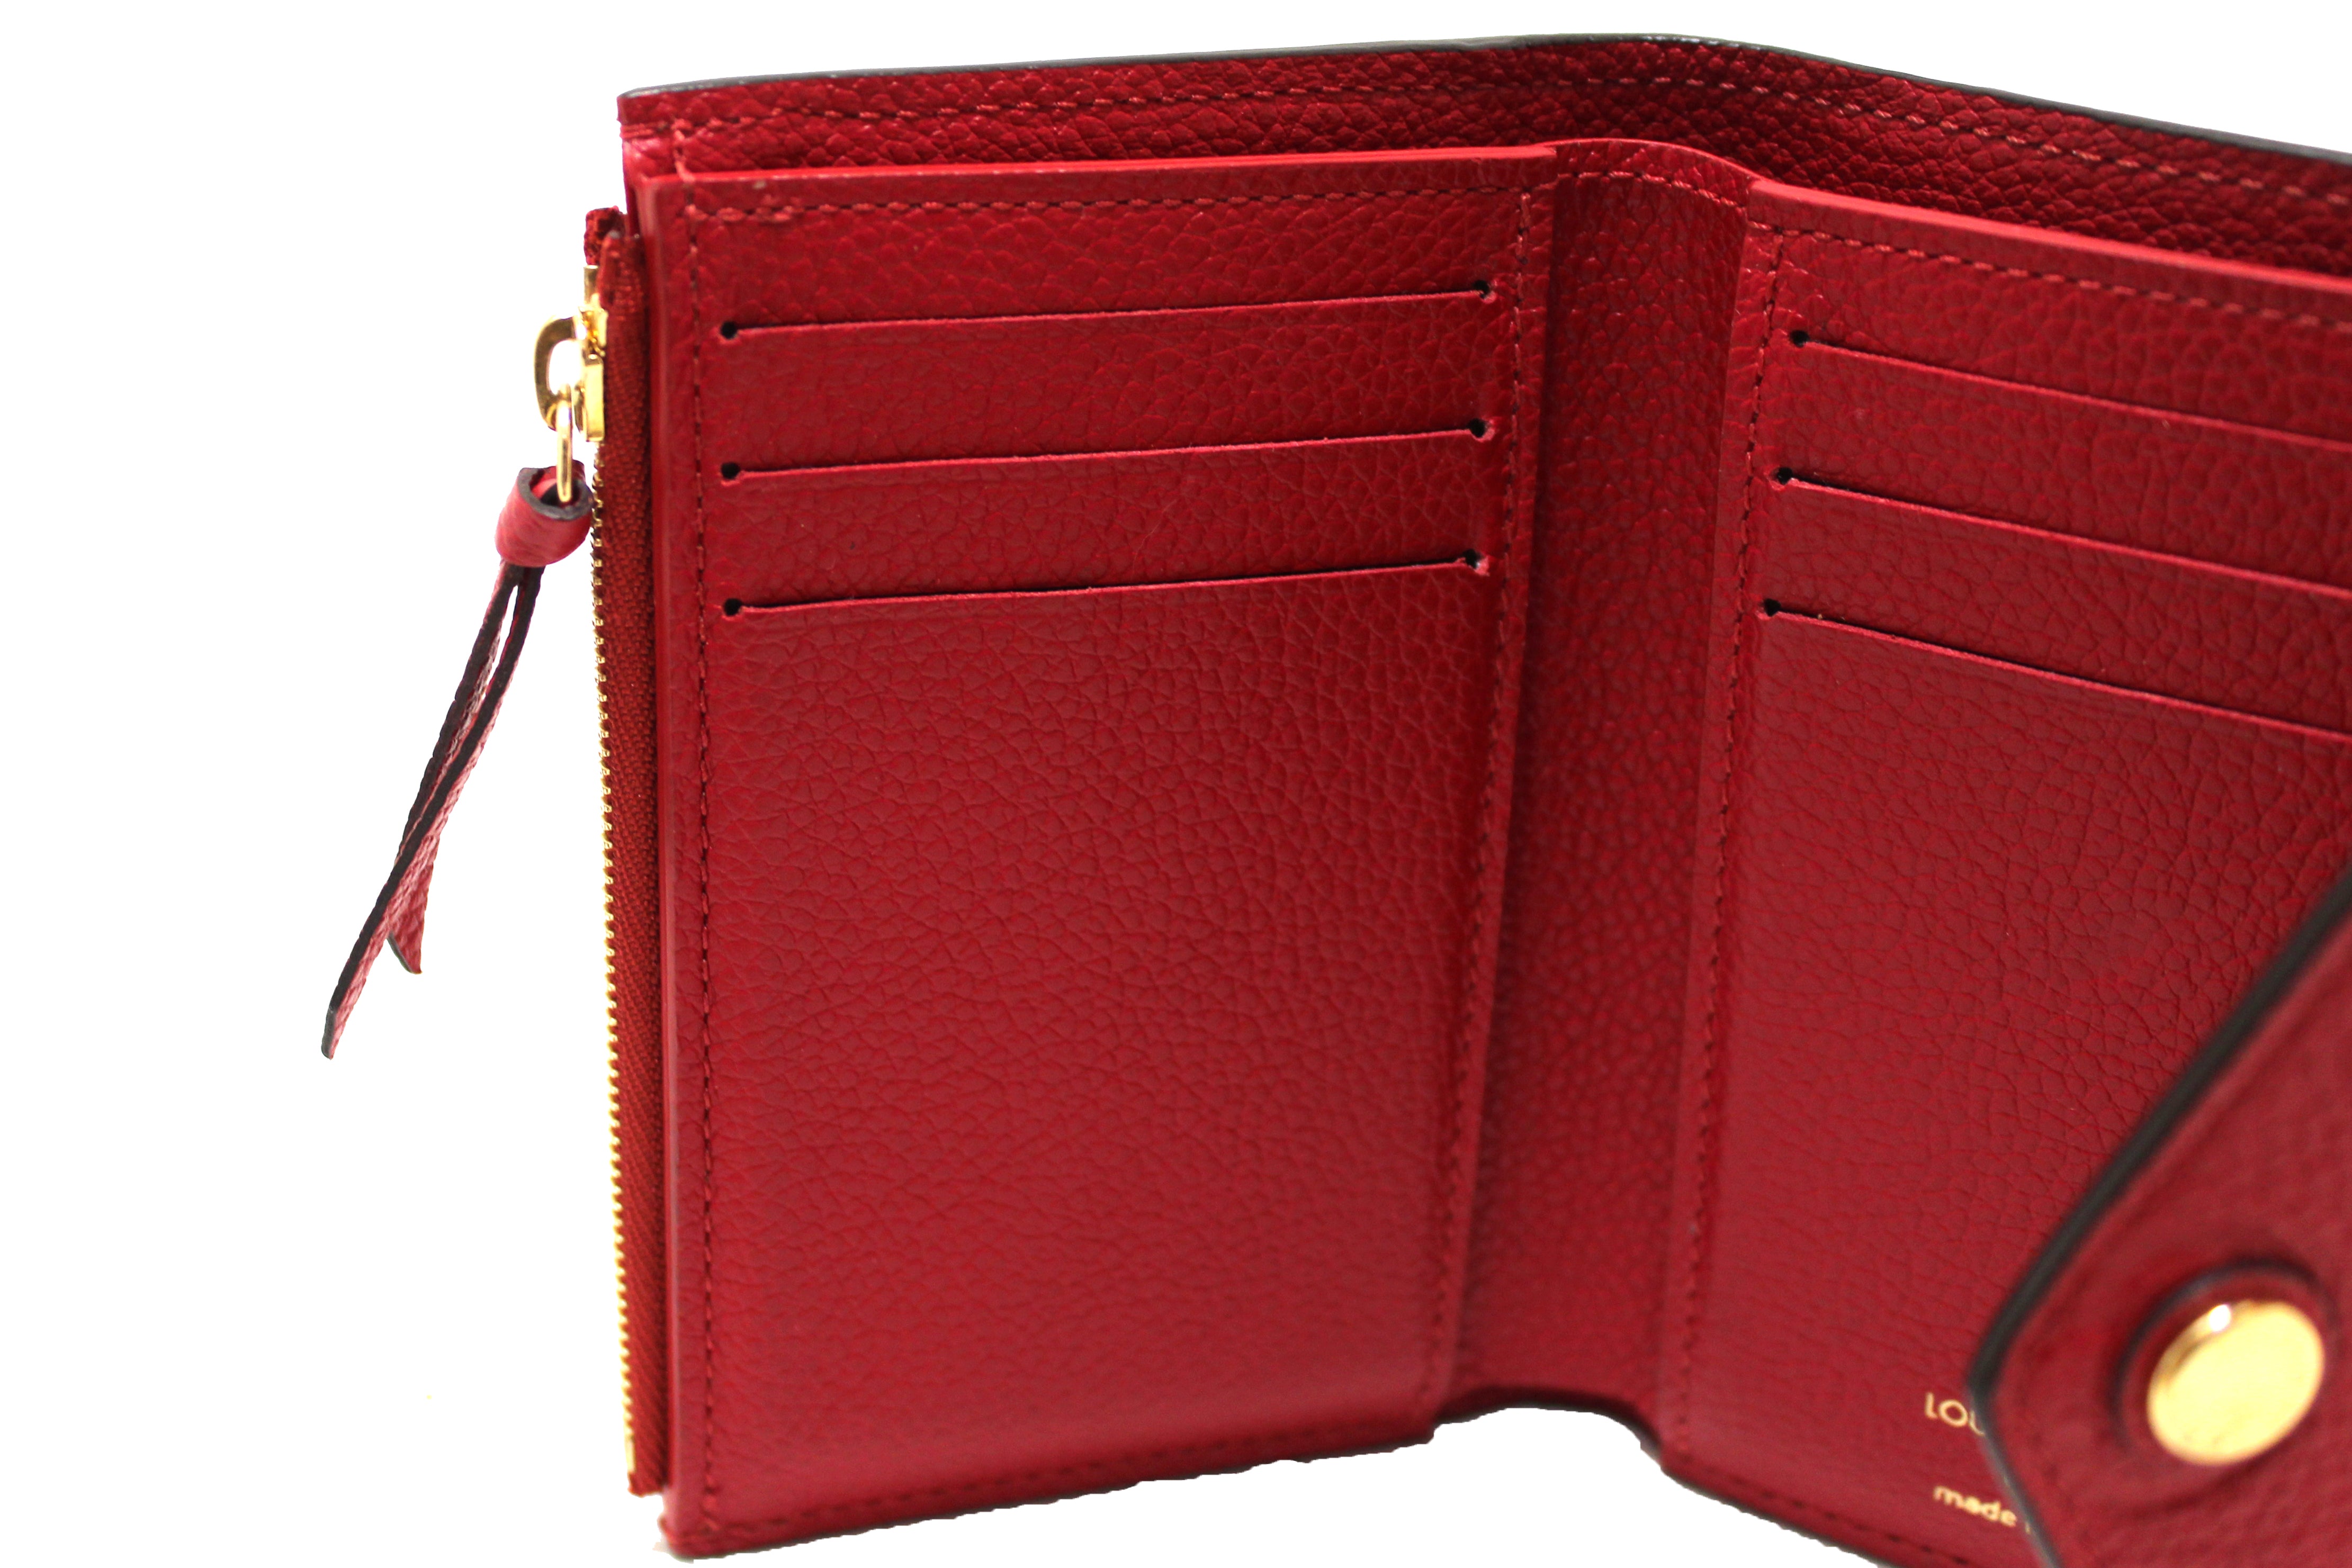 PRELOVED LOUIS VUITTON Monogram Red Empreinte Leather Citadine PM Bag –  KimmieBBags LLC